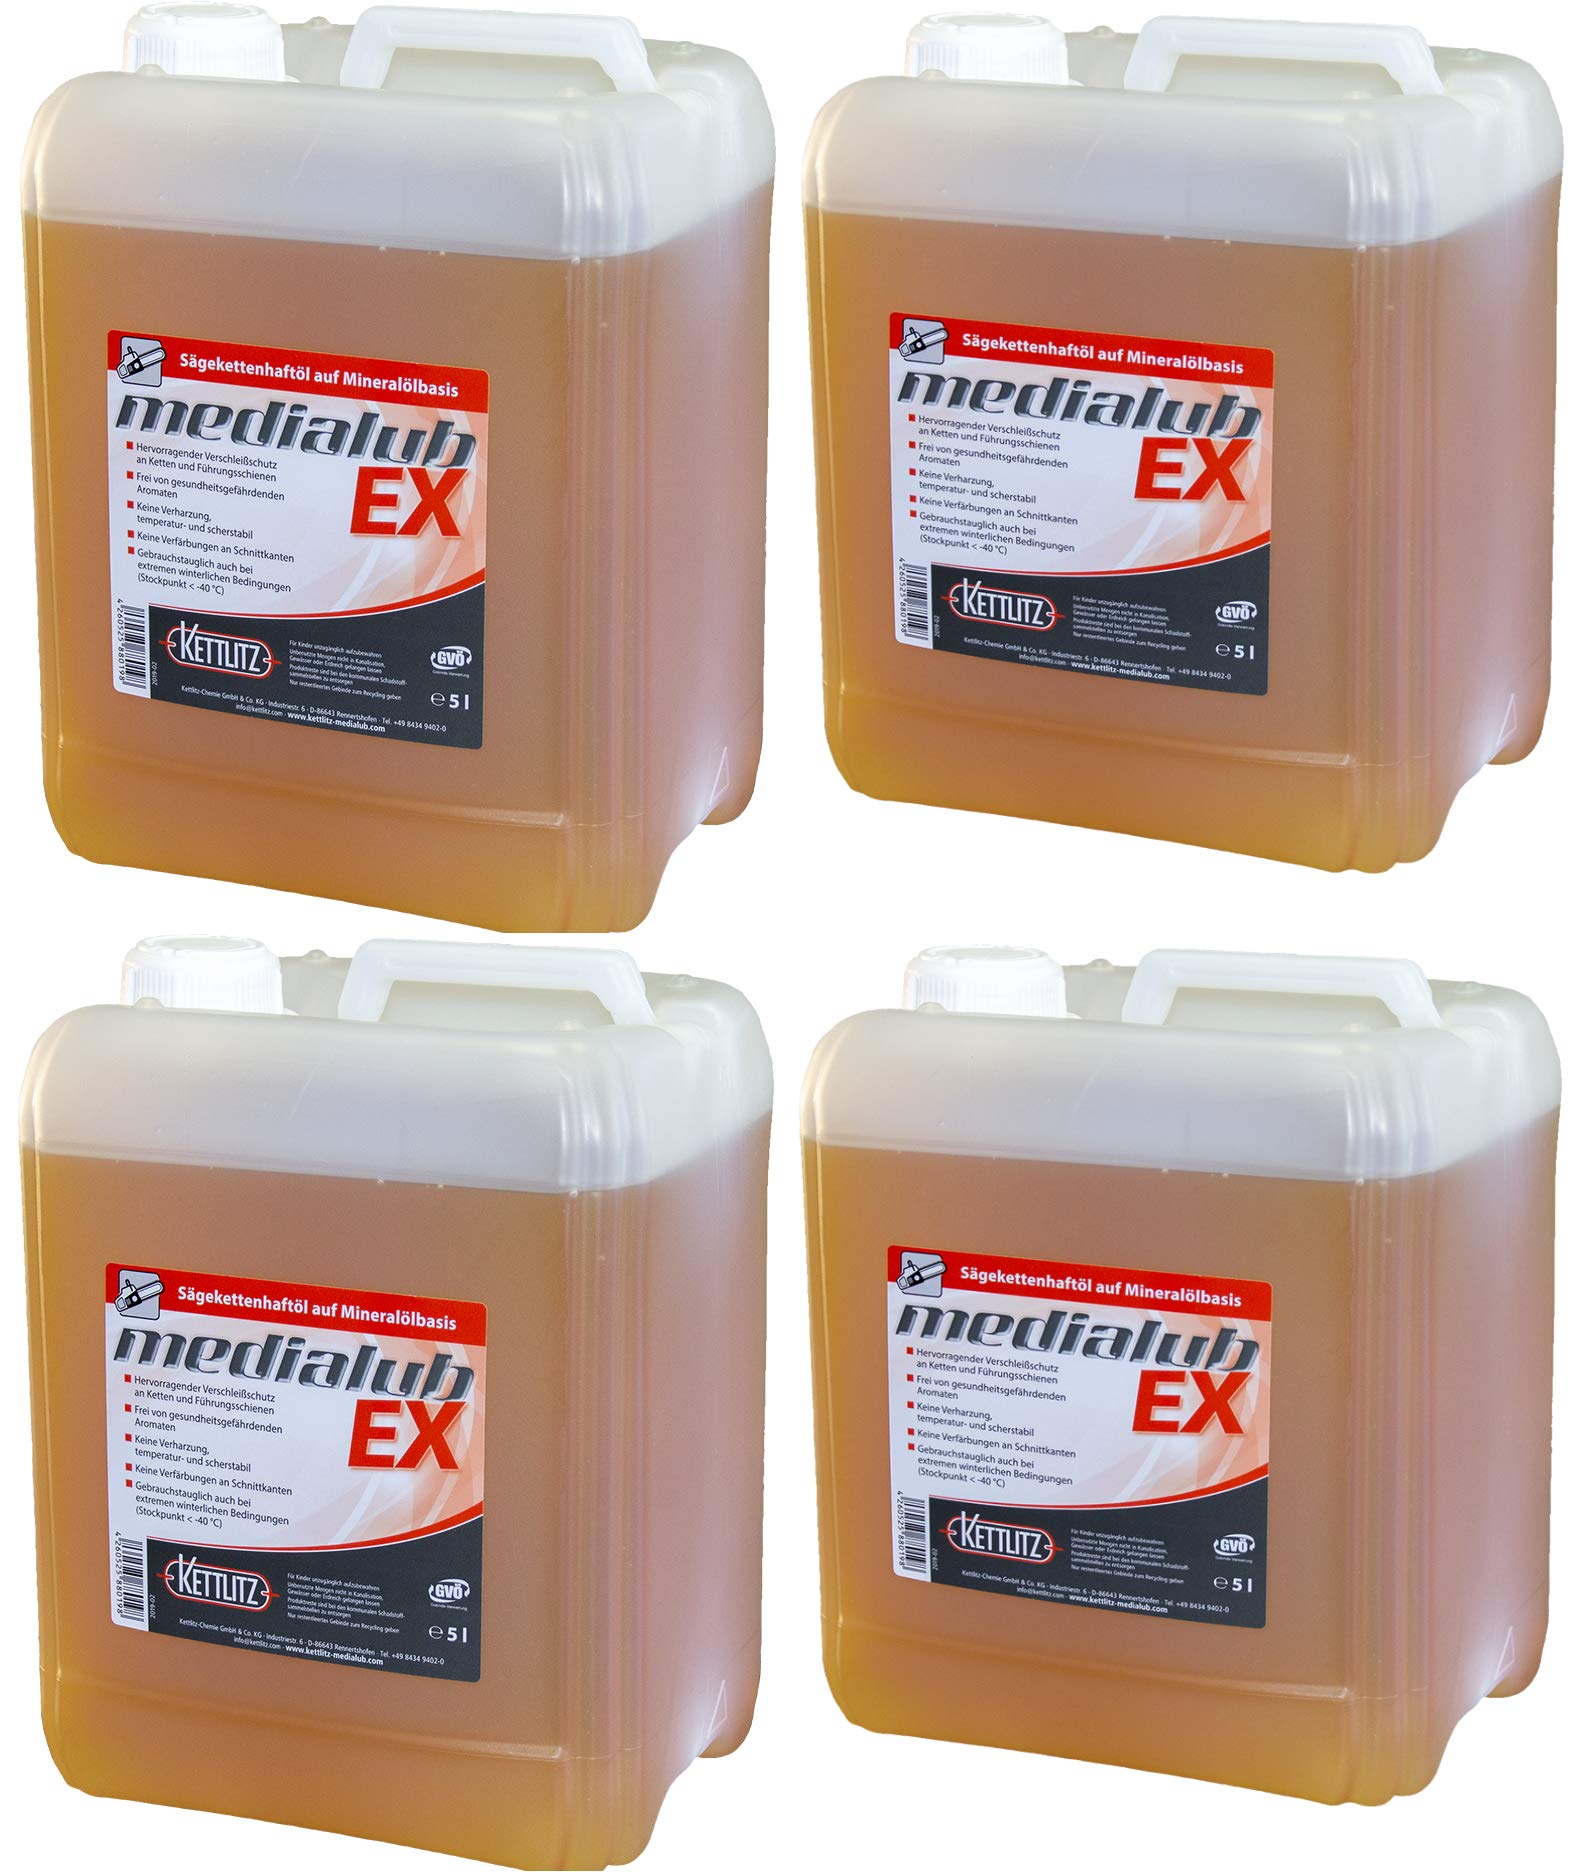 4 x 5 Liter Mineralisches Hochleistungs Kettenöl KETTLITZ-Medialub EX Sägekettenhaftöl auf Mineralölbasis von KETTLITZ-Medialub